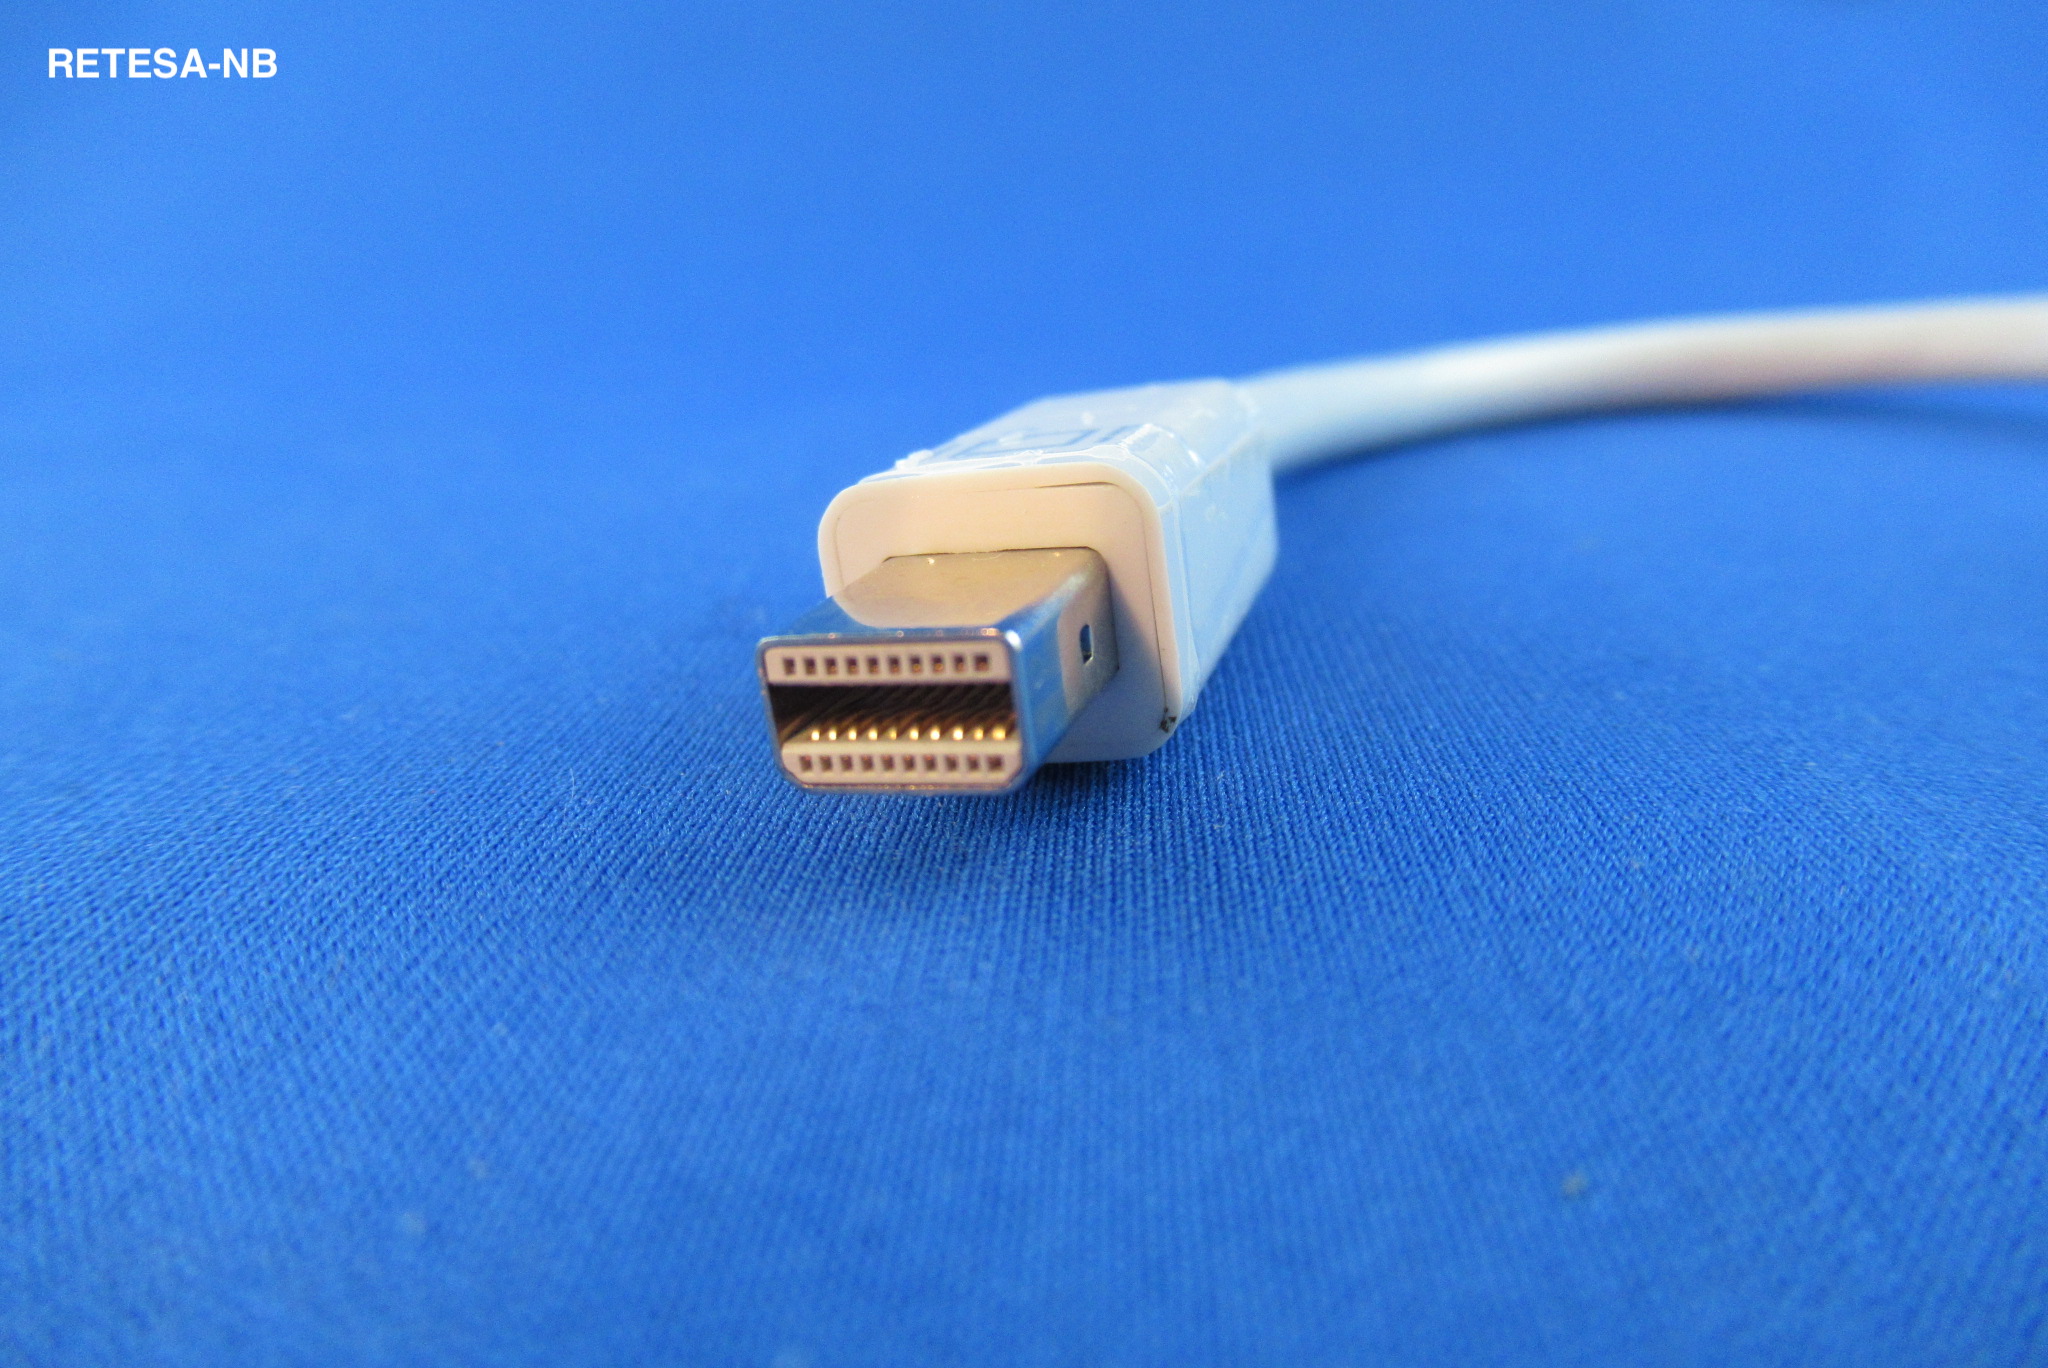 Adapter Mini-DisplayPort zu VGA ATEN VC920